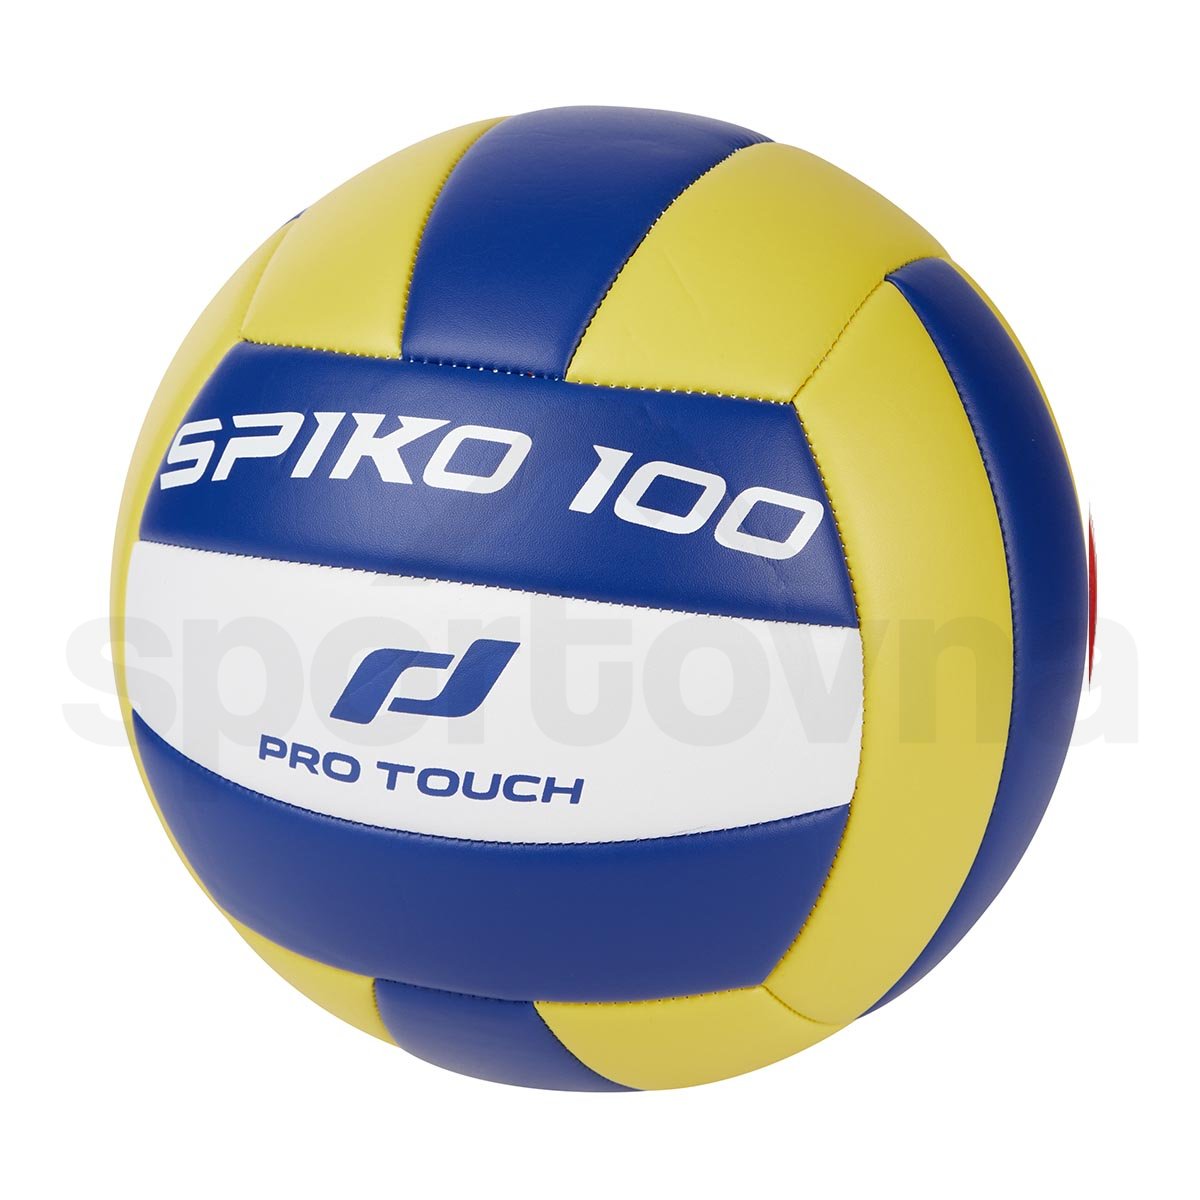 Pro Touch Spiko 100 Indoor U 413476-900